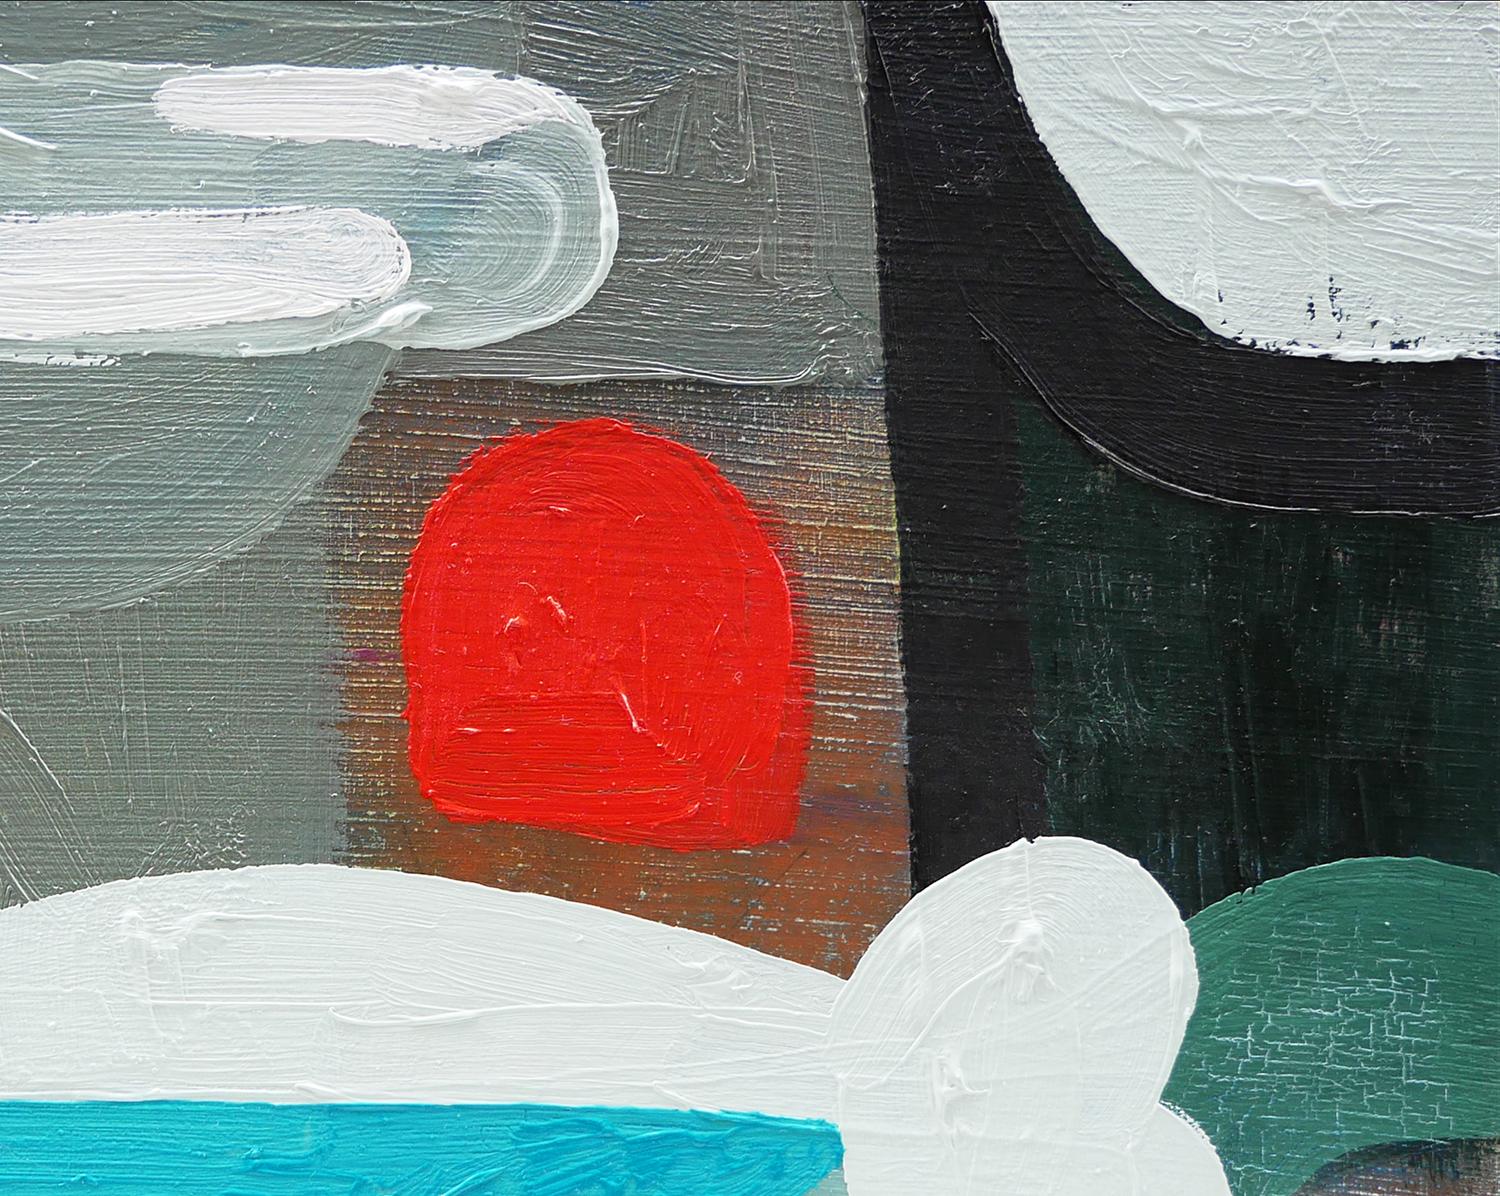 Rosa, himmelblau, grau und rot abstrakte zeitgenössische Malerei von Peter Healy aus Houston, TX. Das Gemälde zeigt geometrische Formen, die an ein durch die Wolken fliegendes Fahrzeug erinnern. Auf der Rückseite vom Künstler signiert und datiert.